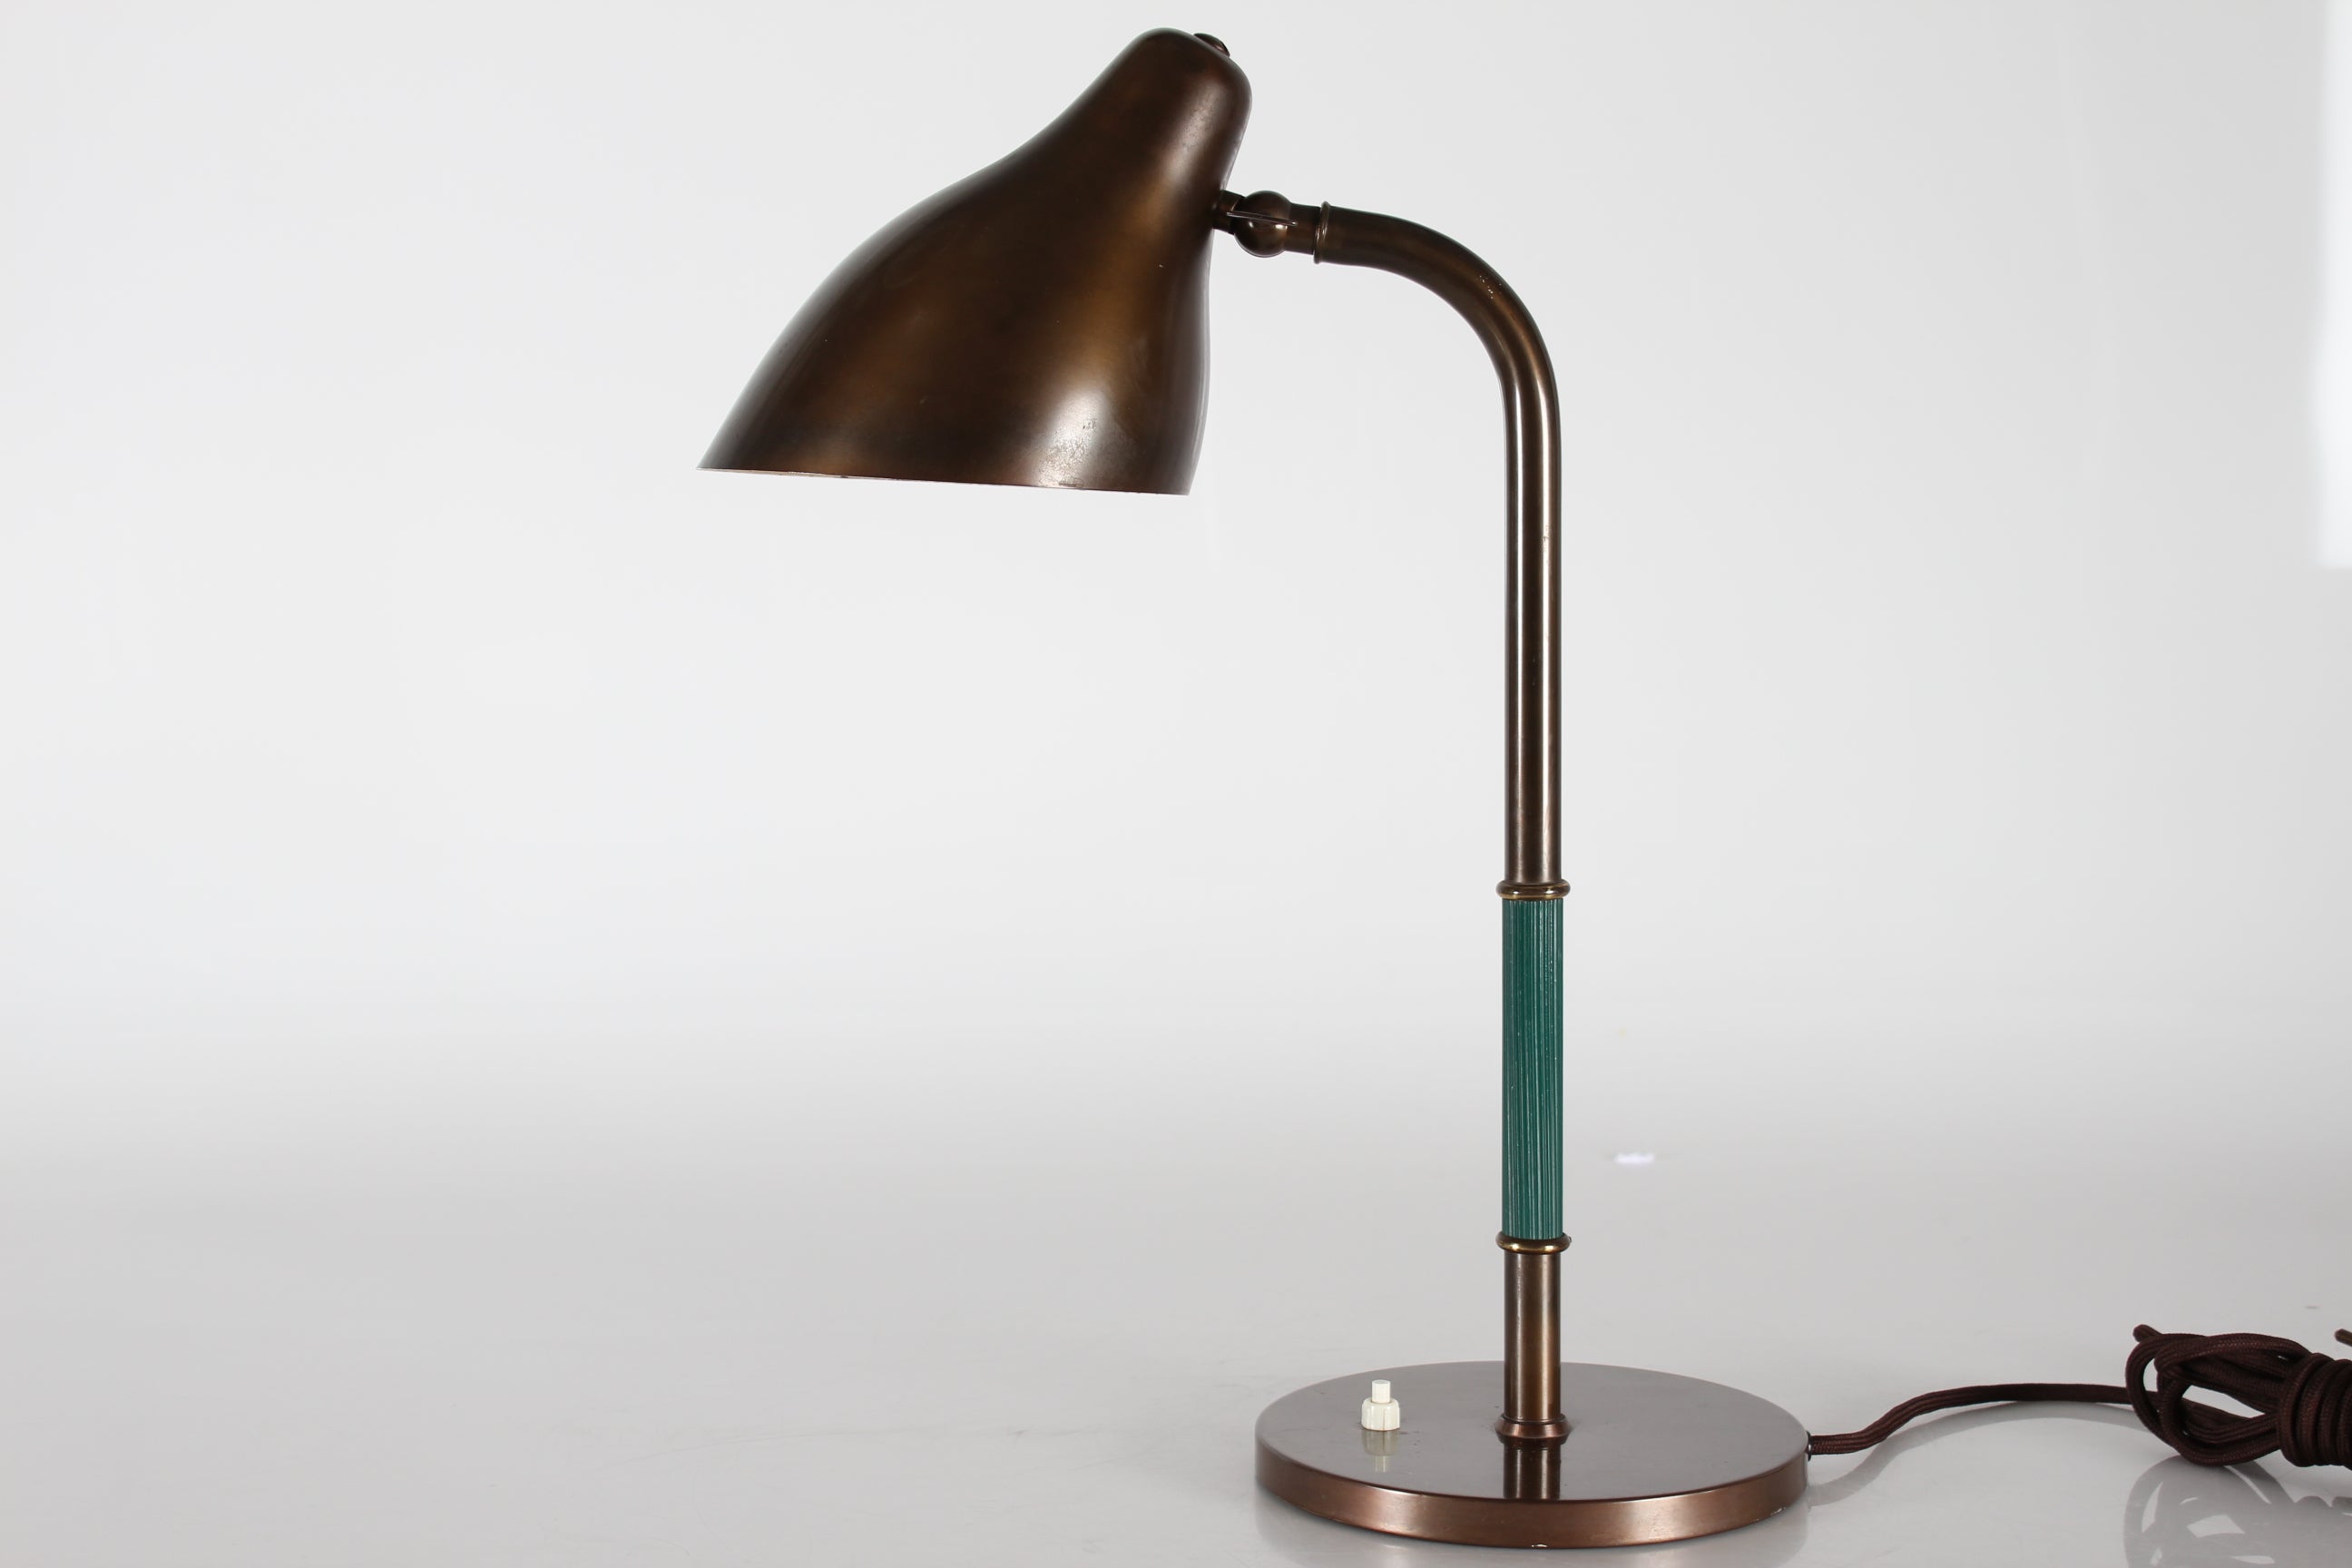 Vintage Schreibtischlampe Modell B 187 des dänischen Architekten Vilhelm Lauritzen (1894-1984)  die von Lyfa in den 1940er Jahren hergestellt wurden.

Vilhelm Lauritzen war einer der größten dänischen Designer des 20. Jahrhunderts.
Er war ein